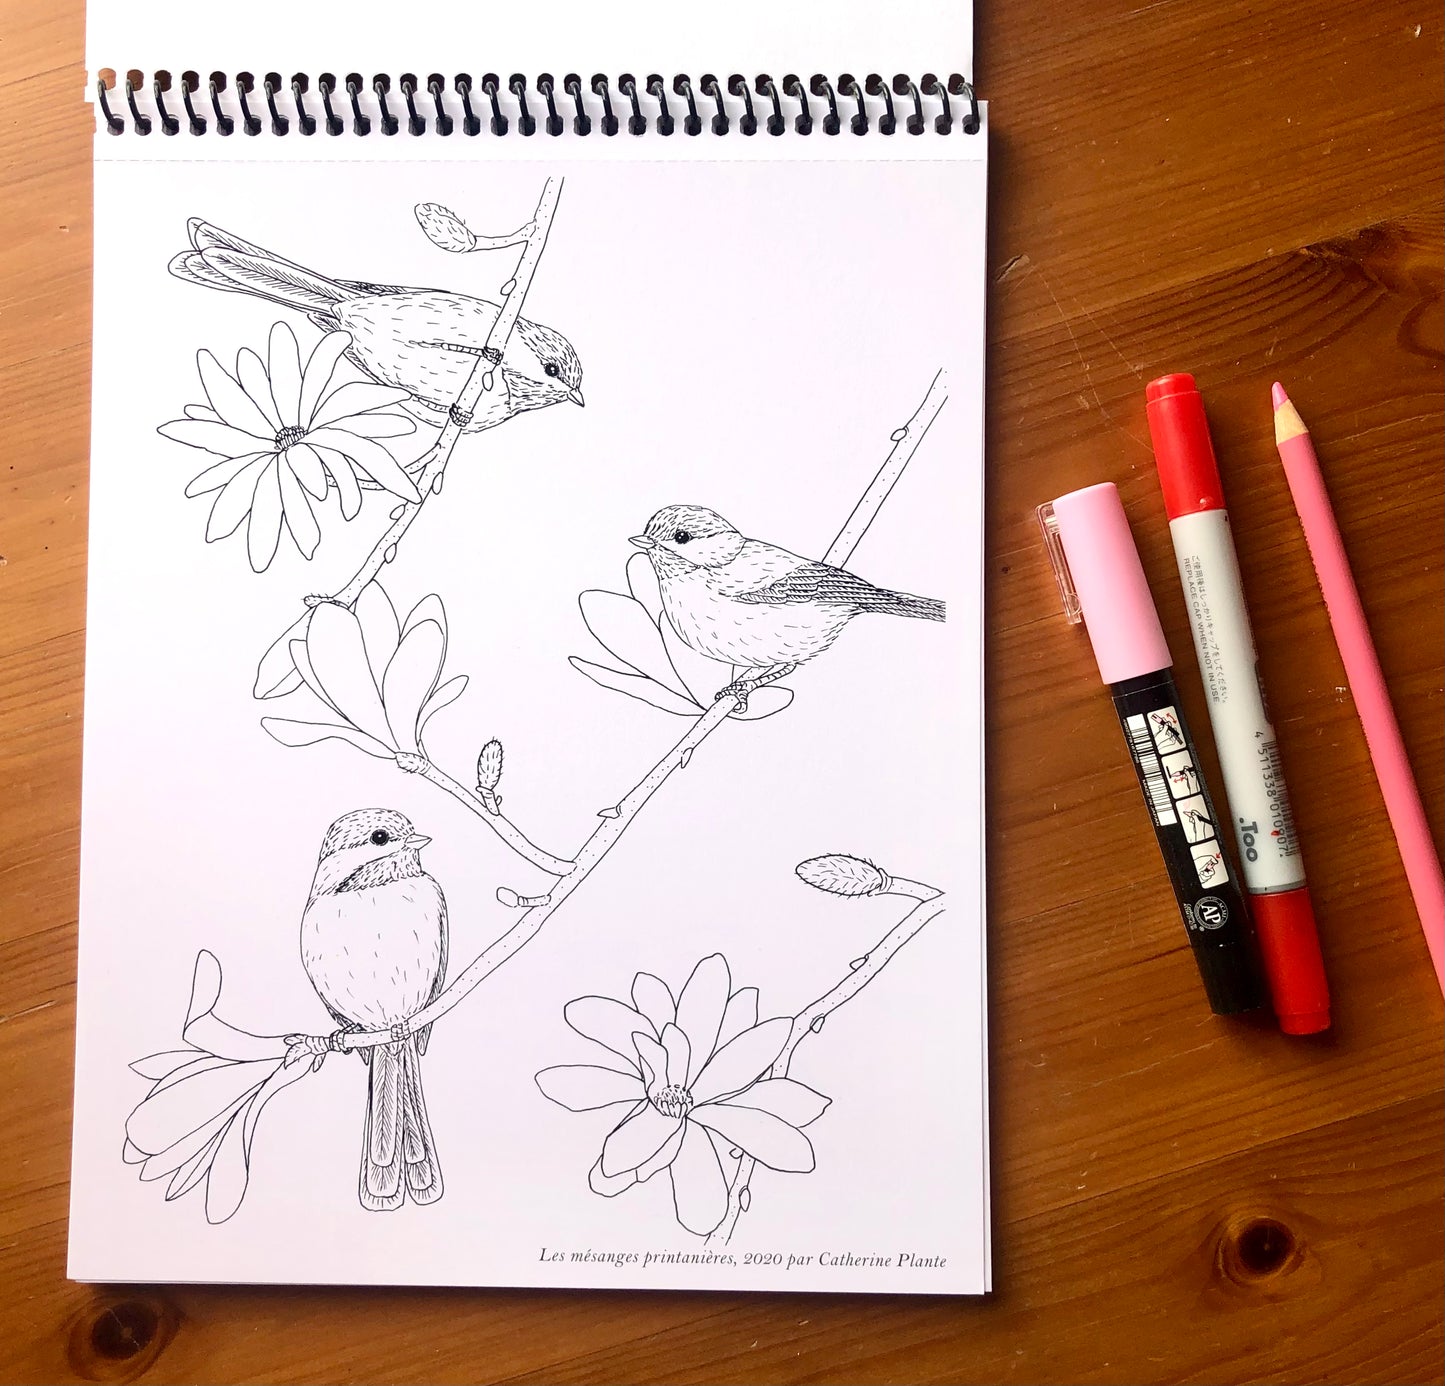 Cahier à colorier - Les oiseaux de nos jardins